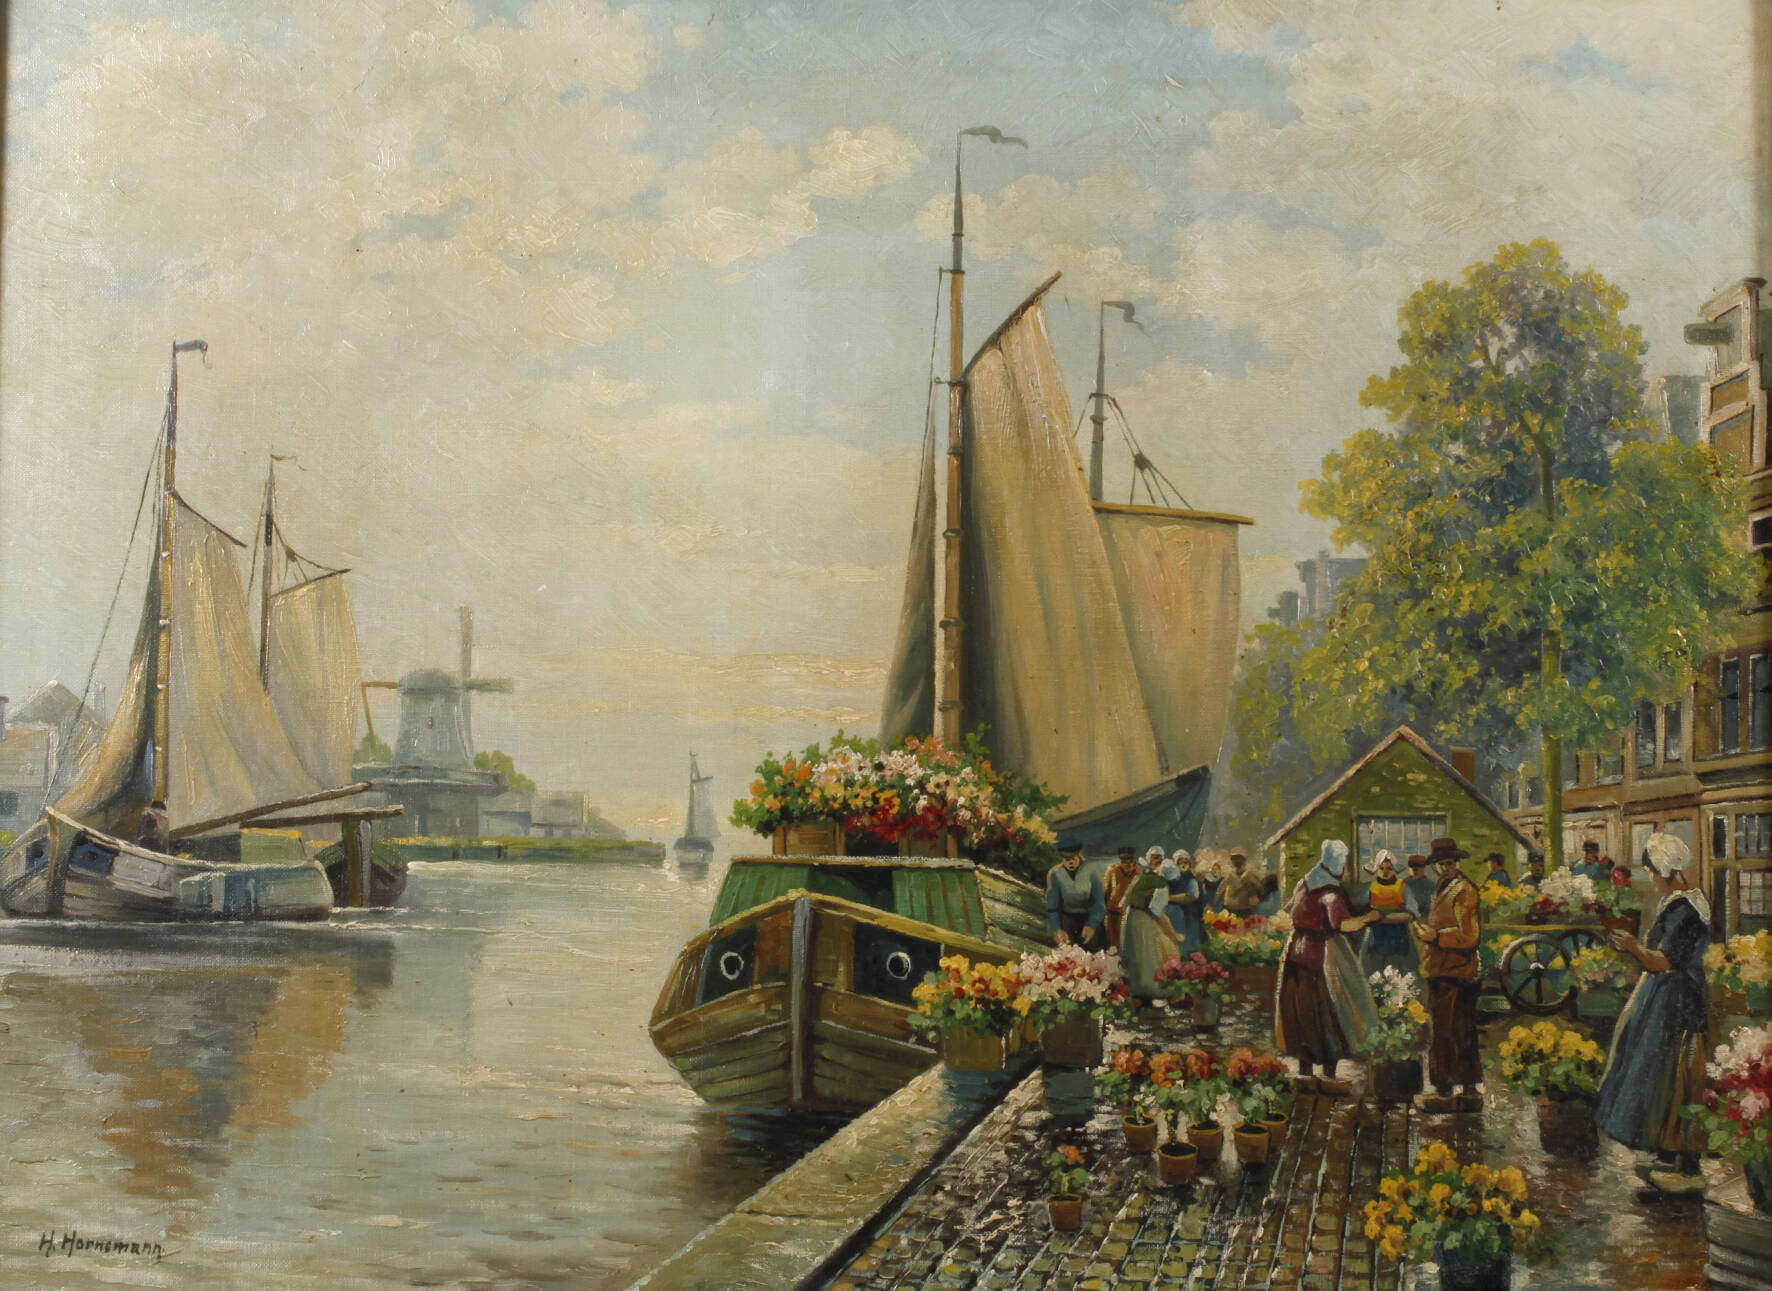 H. Hornsmann, Blumenmarkt am Kanal